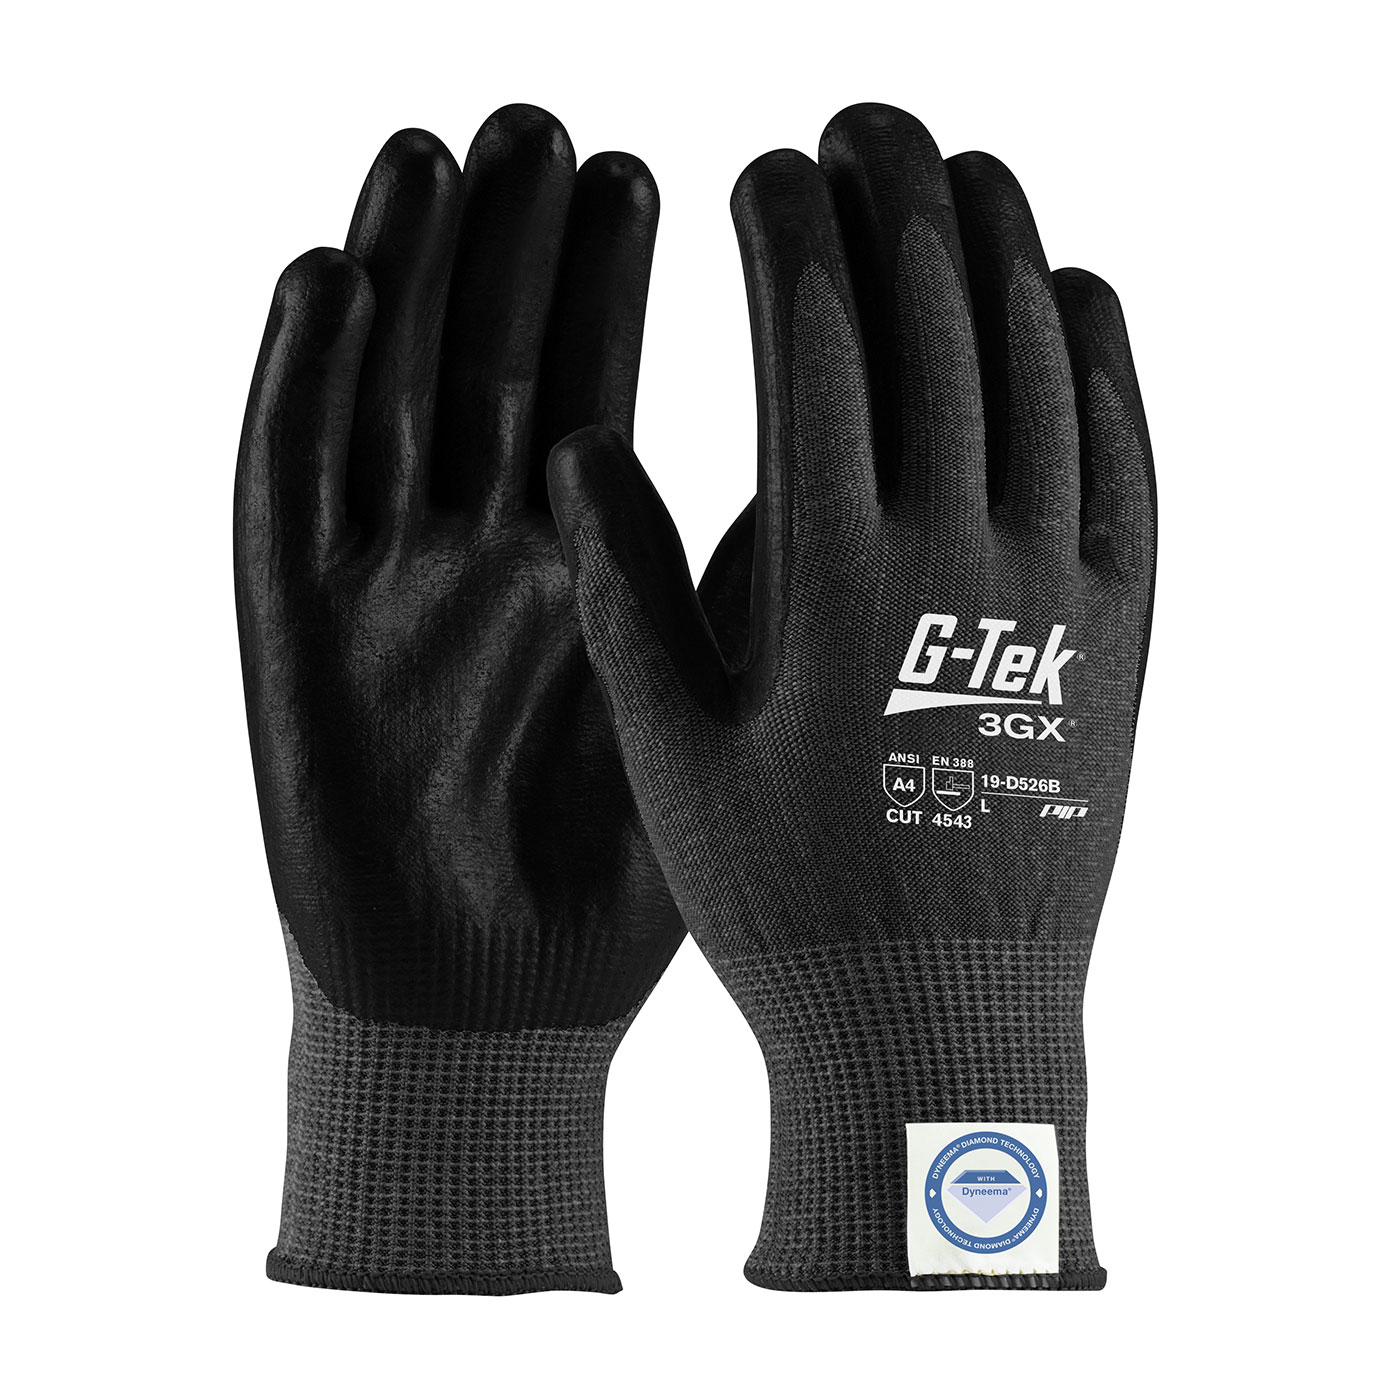 19-D526B PIP®G-Tek®3GX®黑色无缝针织Dyneema®钻石混合手套，手掌和手指上涂有聚氨酯光滑握把-触摸屏兼容